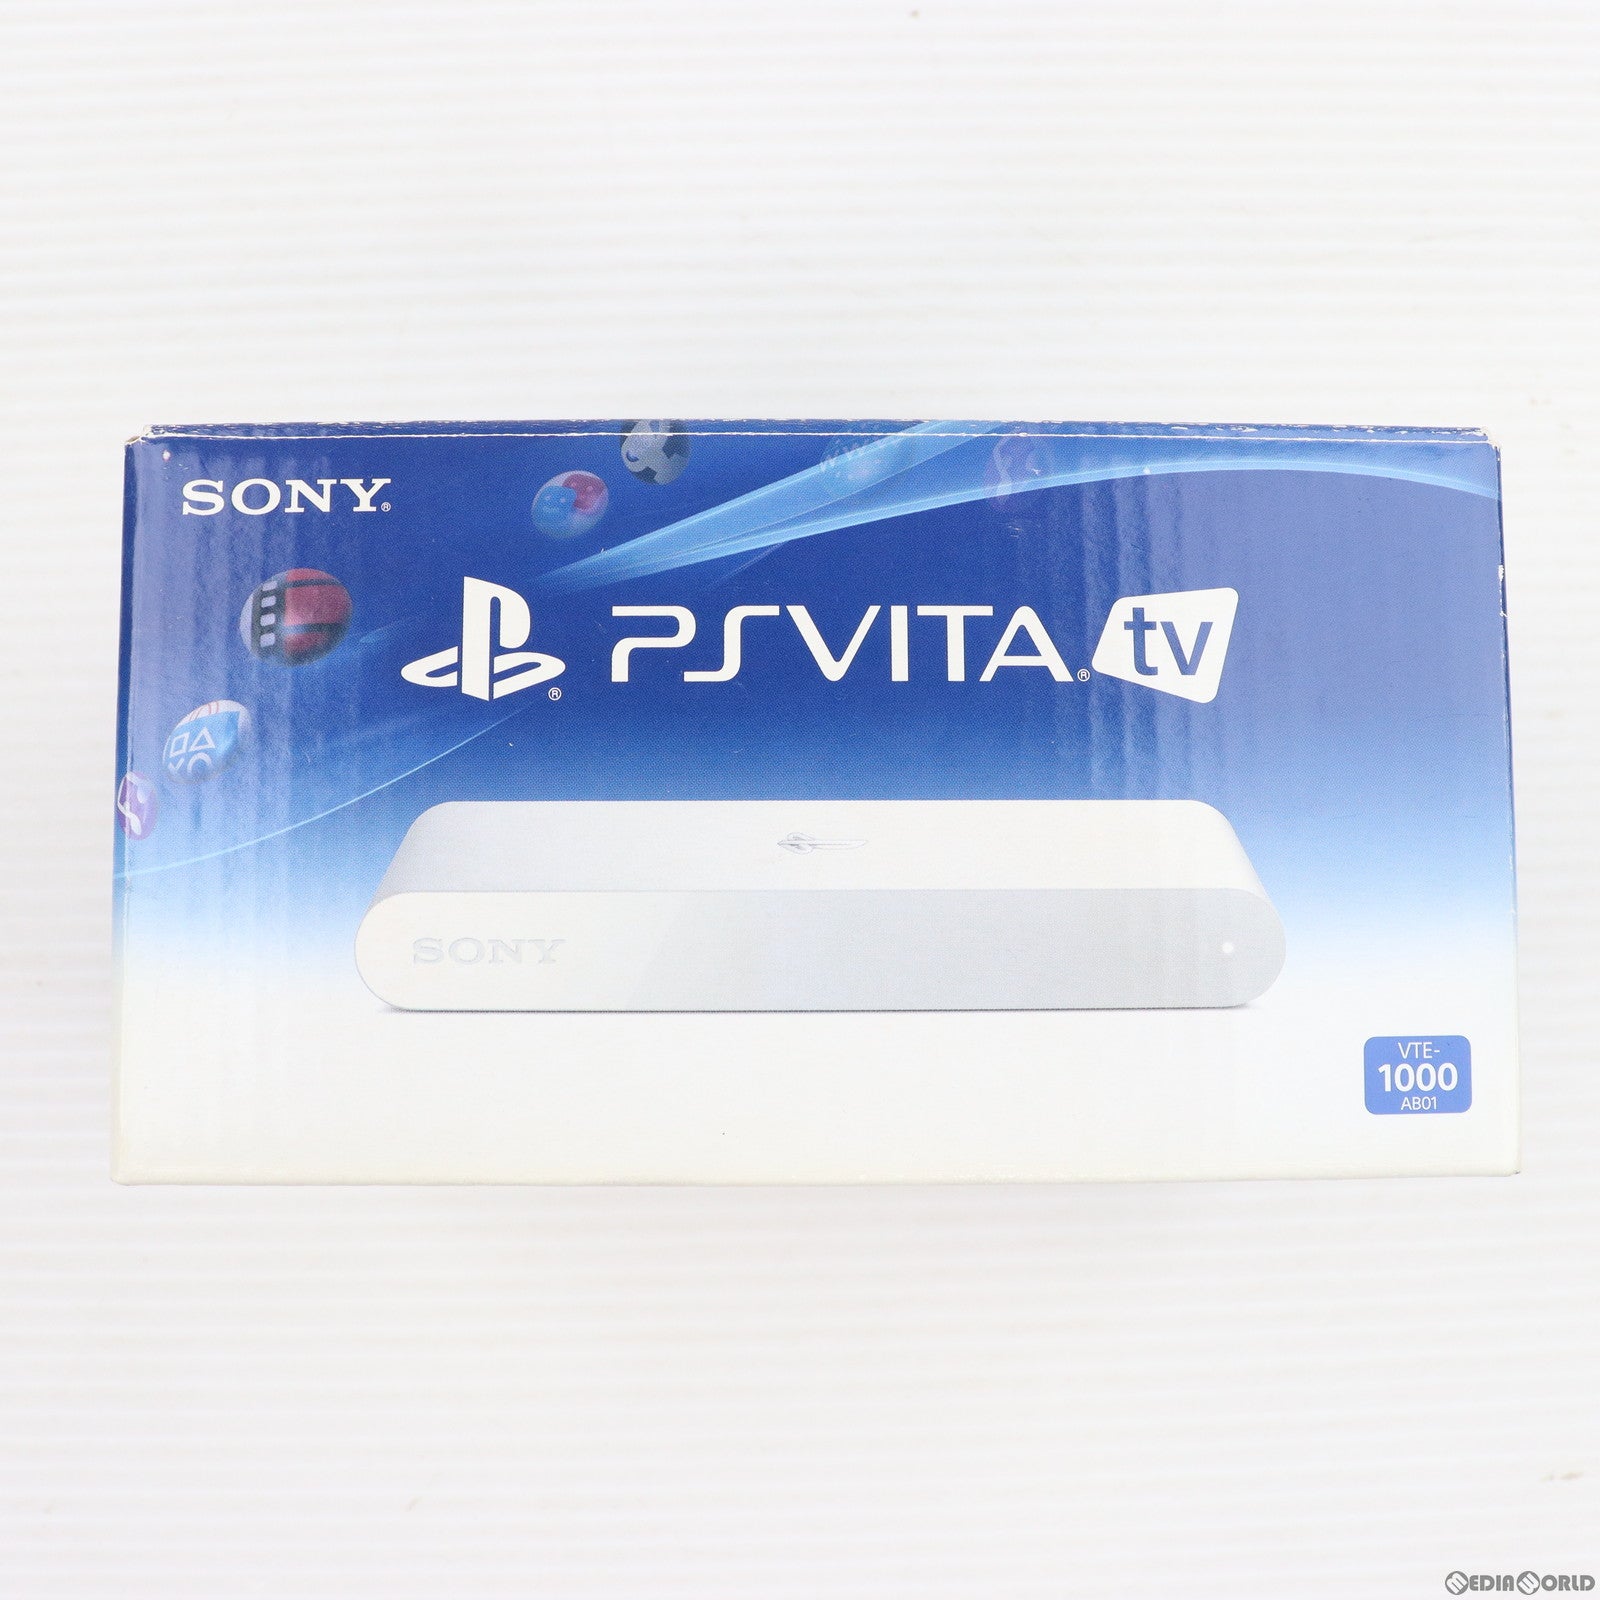 【中古即納】[本体][PSVita]プレイステーションVita PlayStationVita TV(VTE-1000AB01)(20131114)